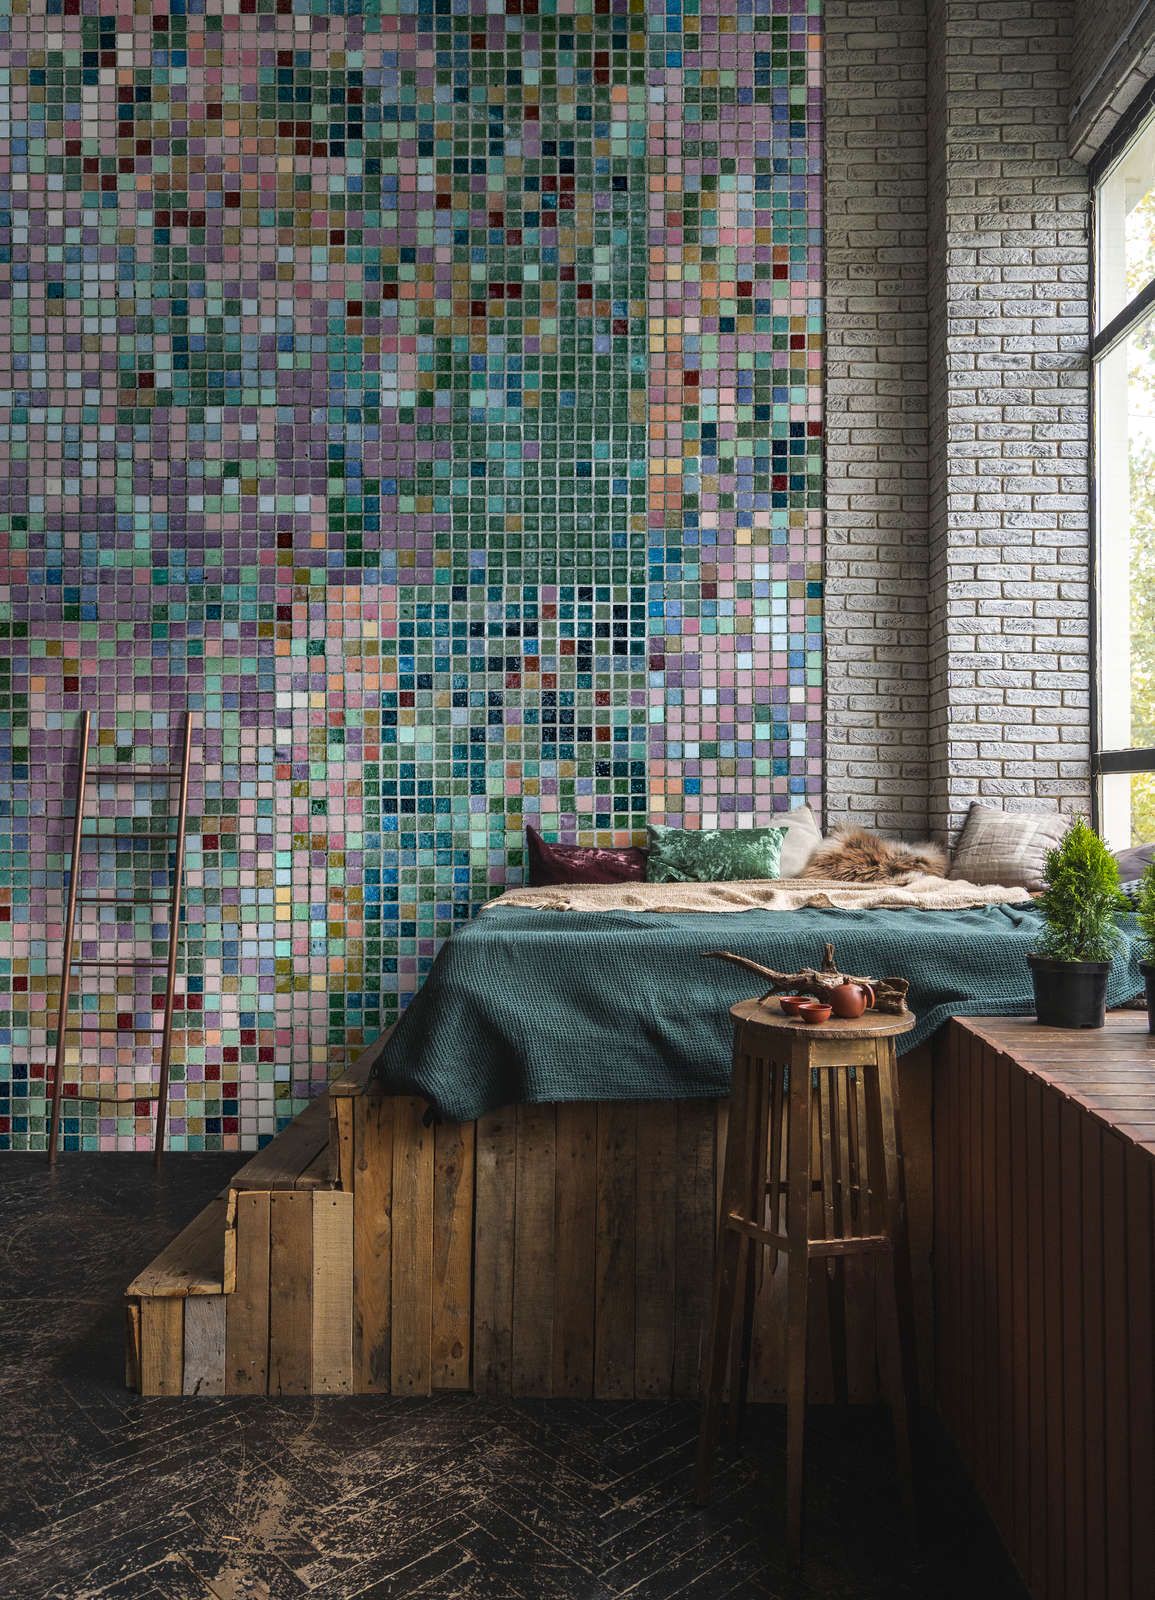             Fotomurali »grand central« - Motivo a mosaico in colori vivaci - Materiali non tessuto opaco e liscio
        